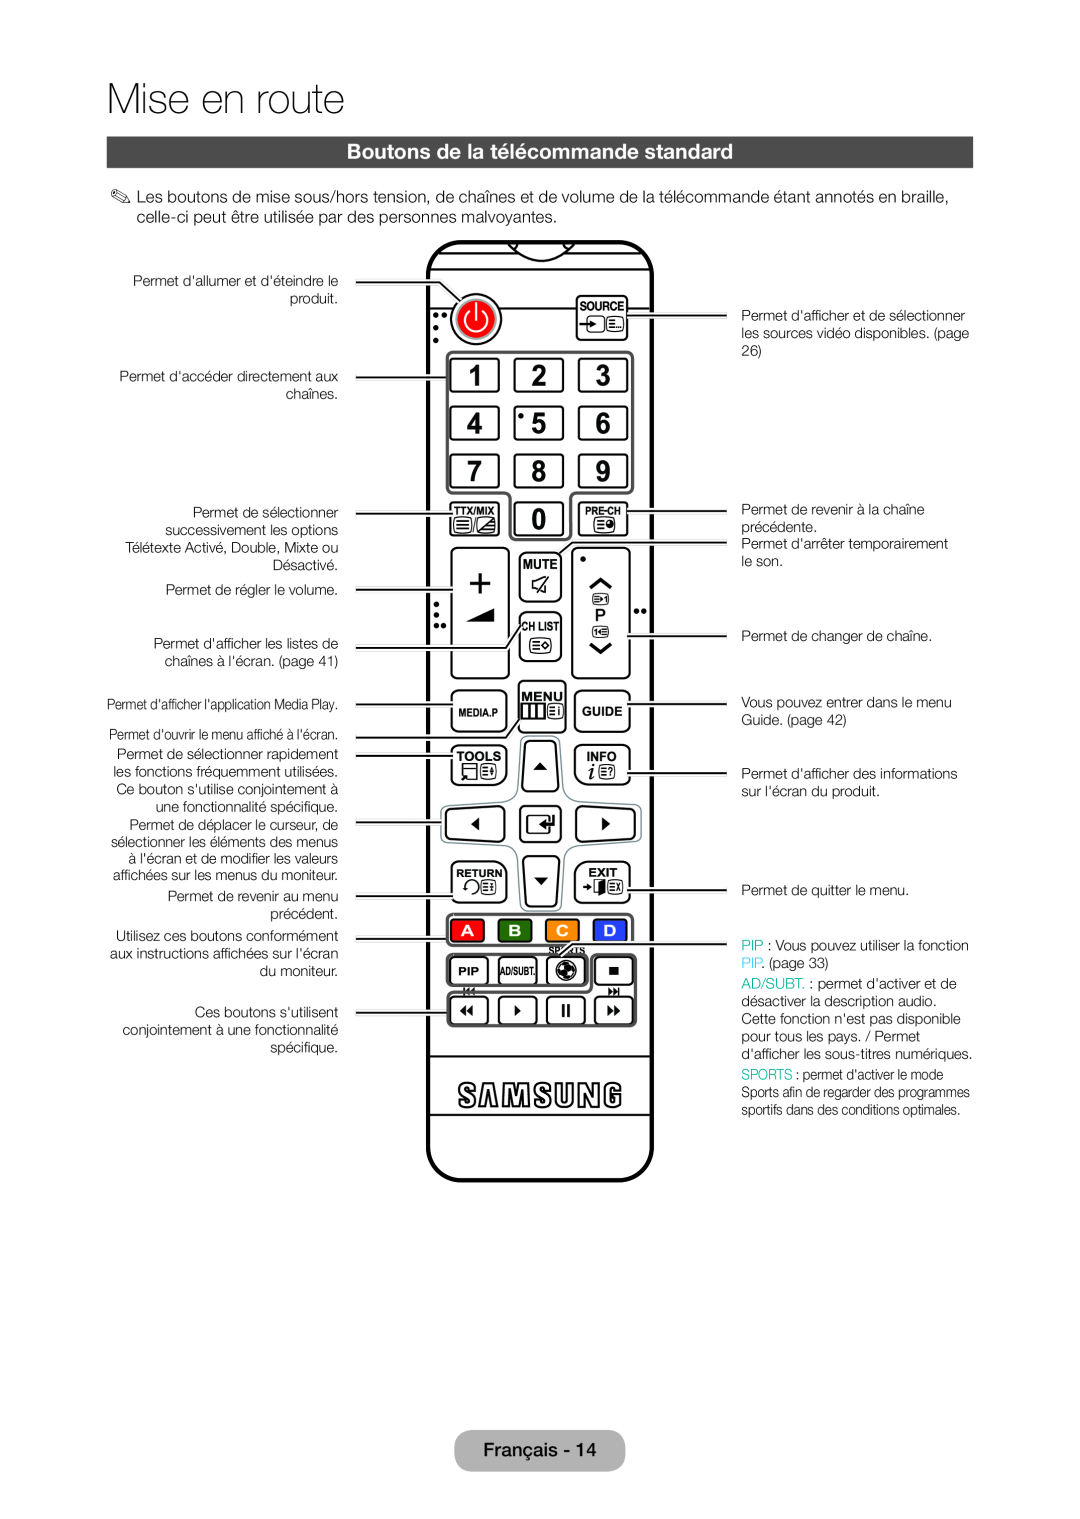 Samsung LT24C350EW/EN, LT23C350EW/EN, LT22C350EW/EN, LT24C370EW/EN manual Boutons de la télécommande standard, Mise en route 